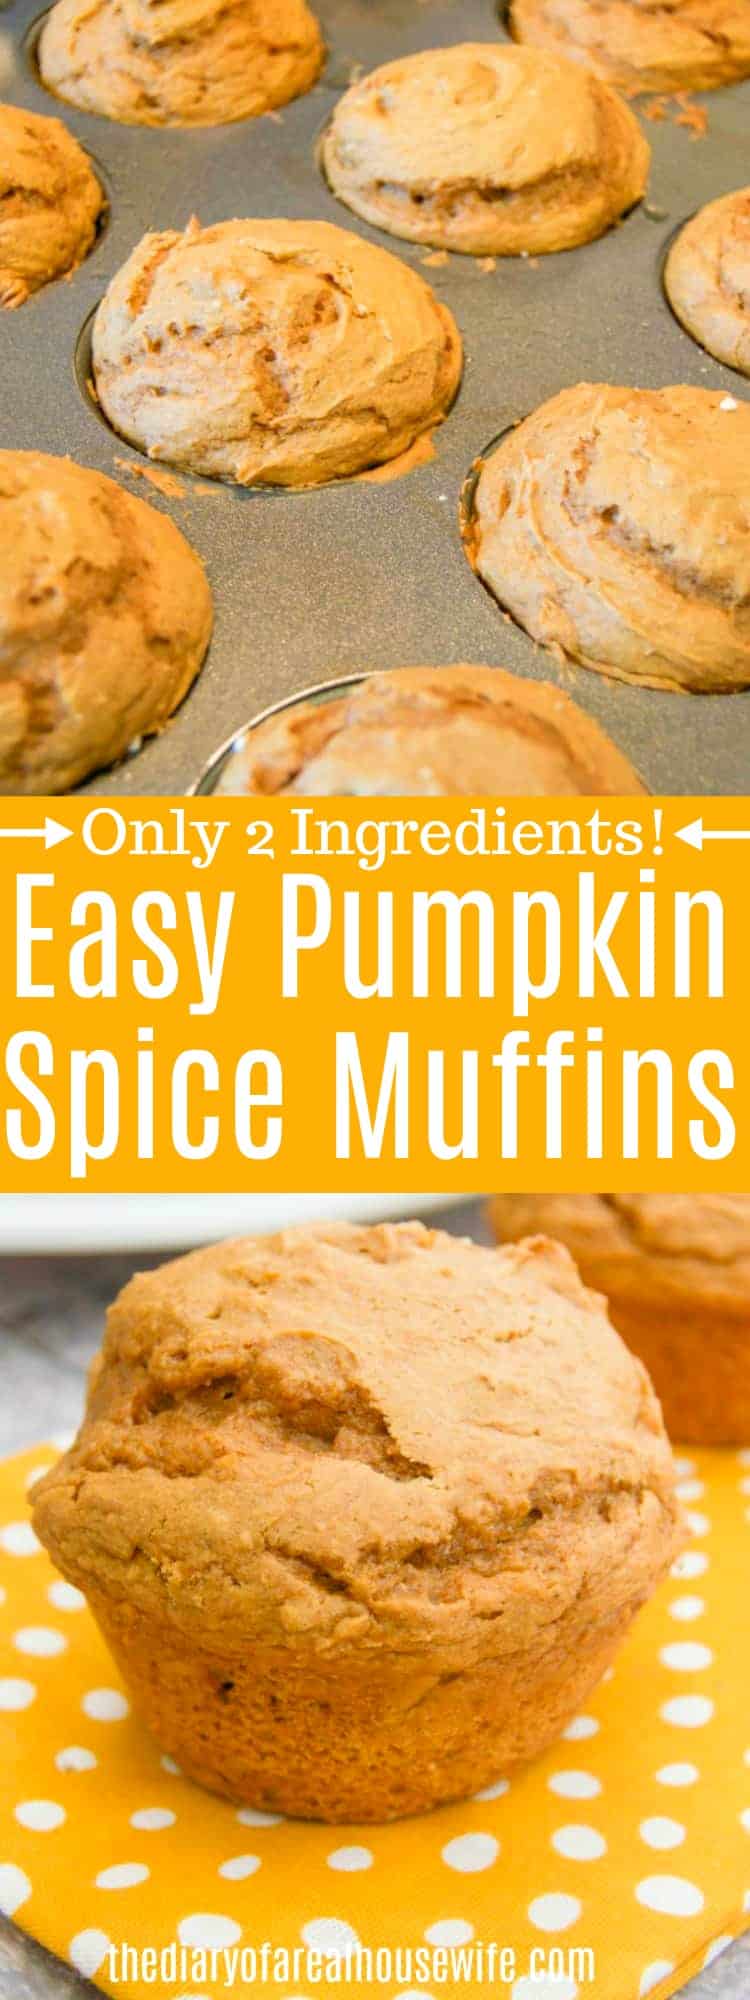 2 Ingredient Pumpkin Spice Muffins